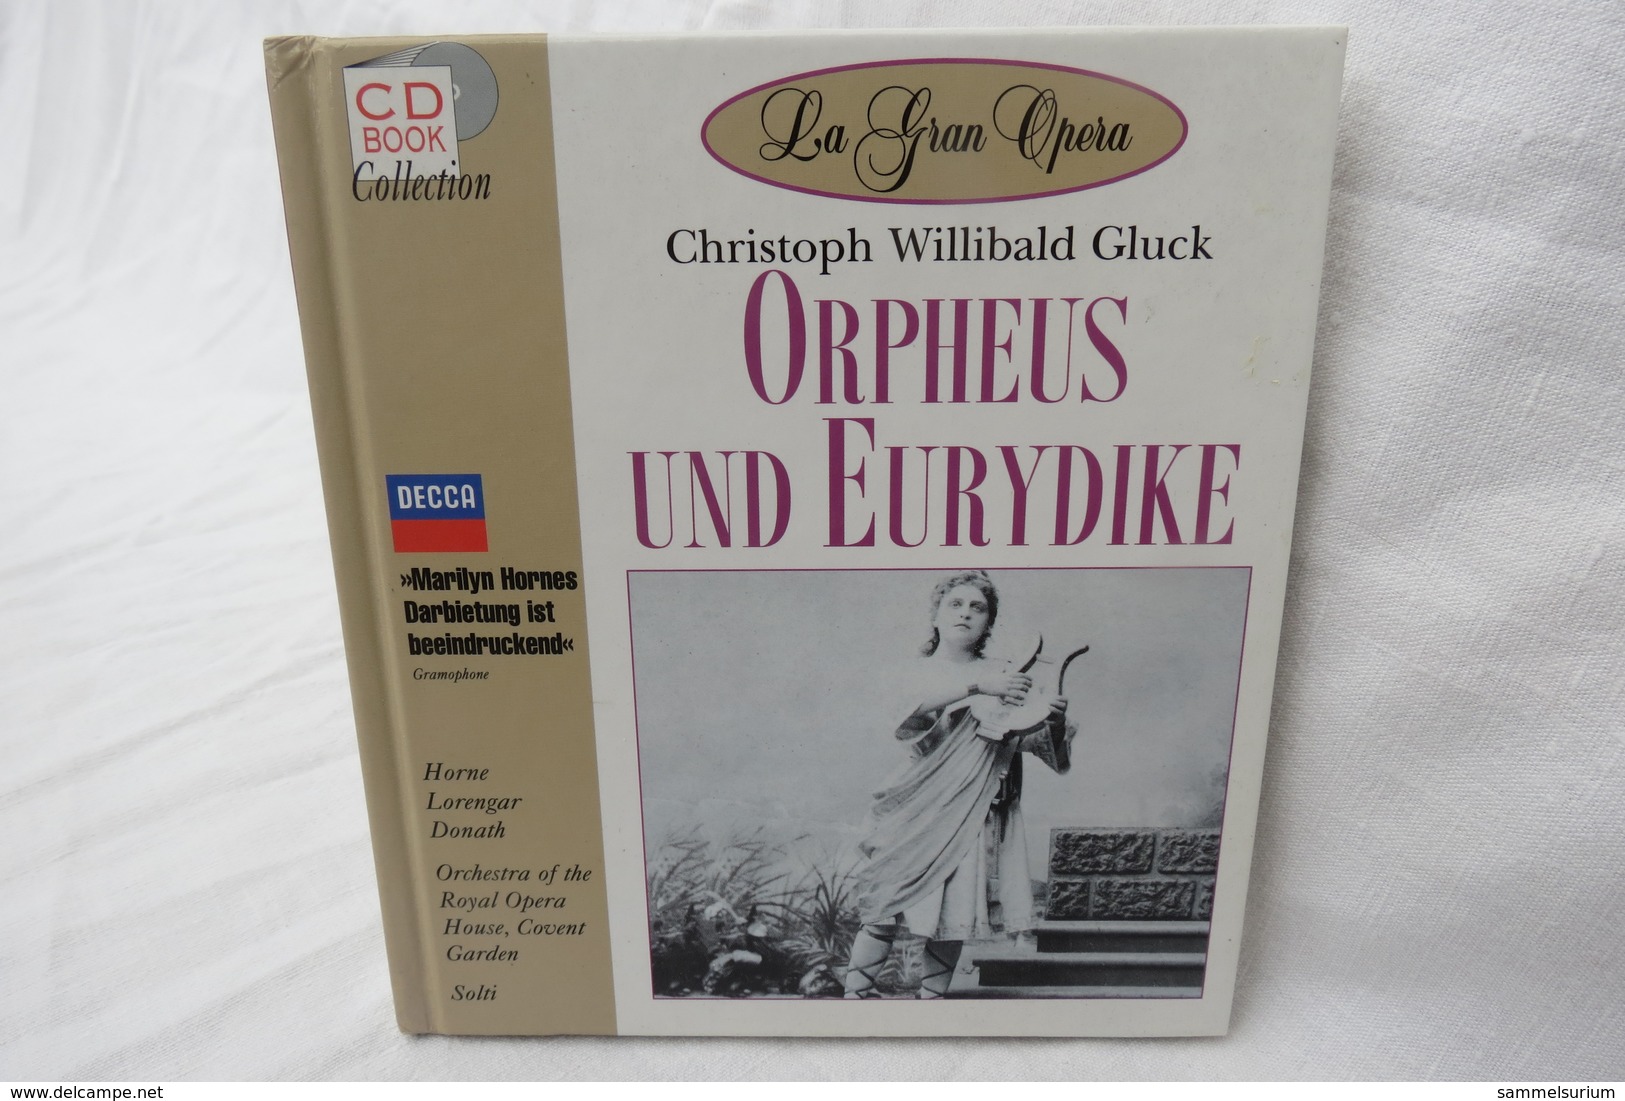 CD "Orpheus Und Eurydike / Christoph Willibald Gluck" Mit Buch Aus Der CD Book Collection (gepflegter Zustand) - Opéra & Opérette